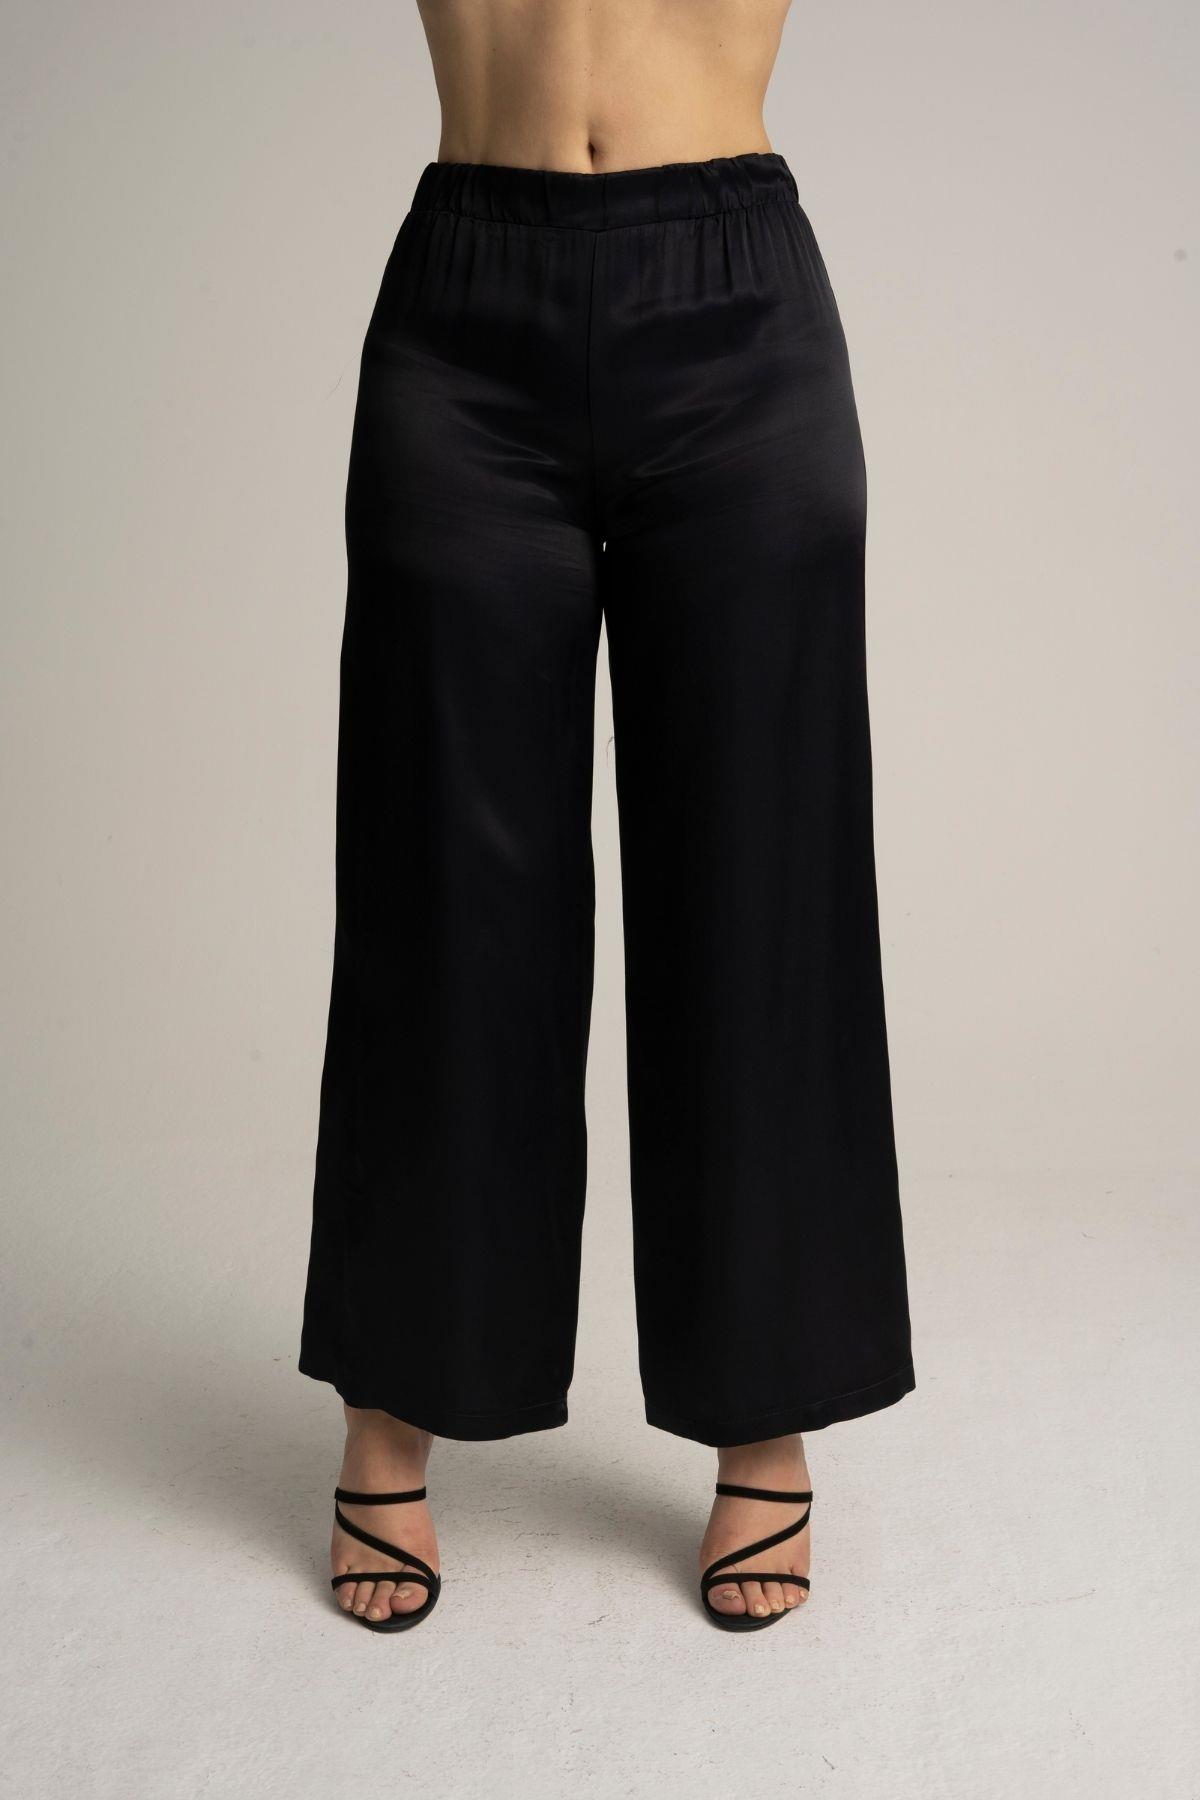 Kadın Büyük Beden Siyah Renk Saten Bol Paça Pantolon